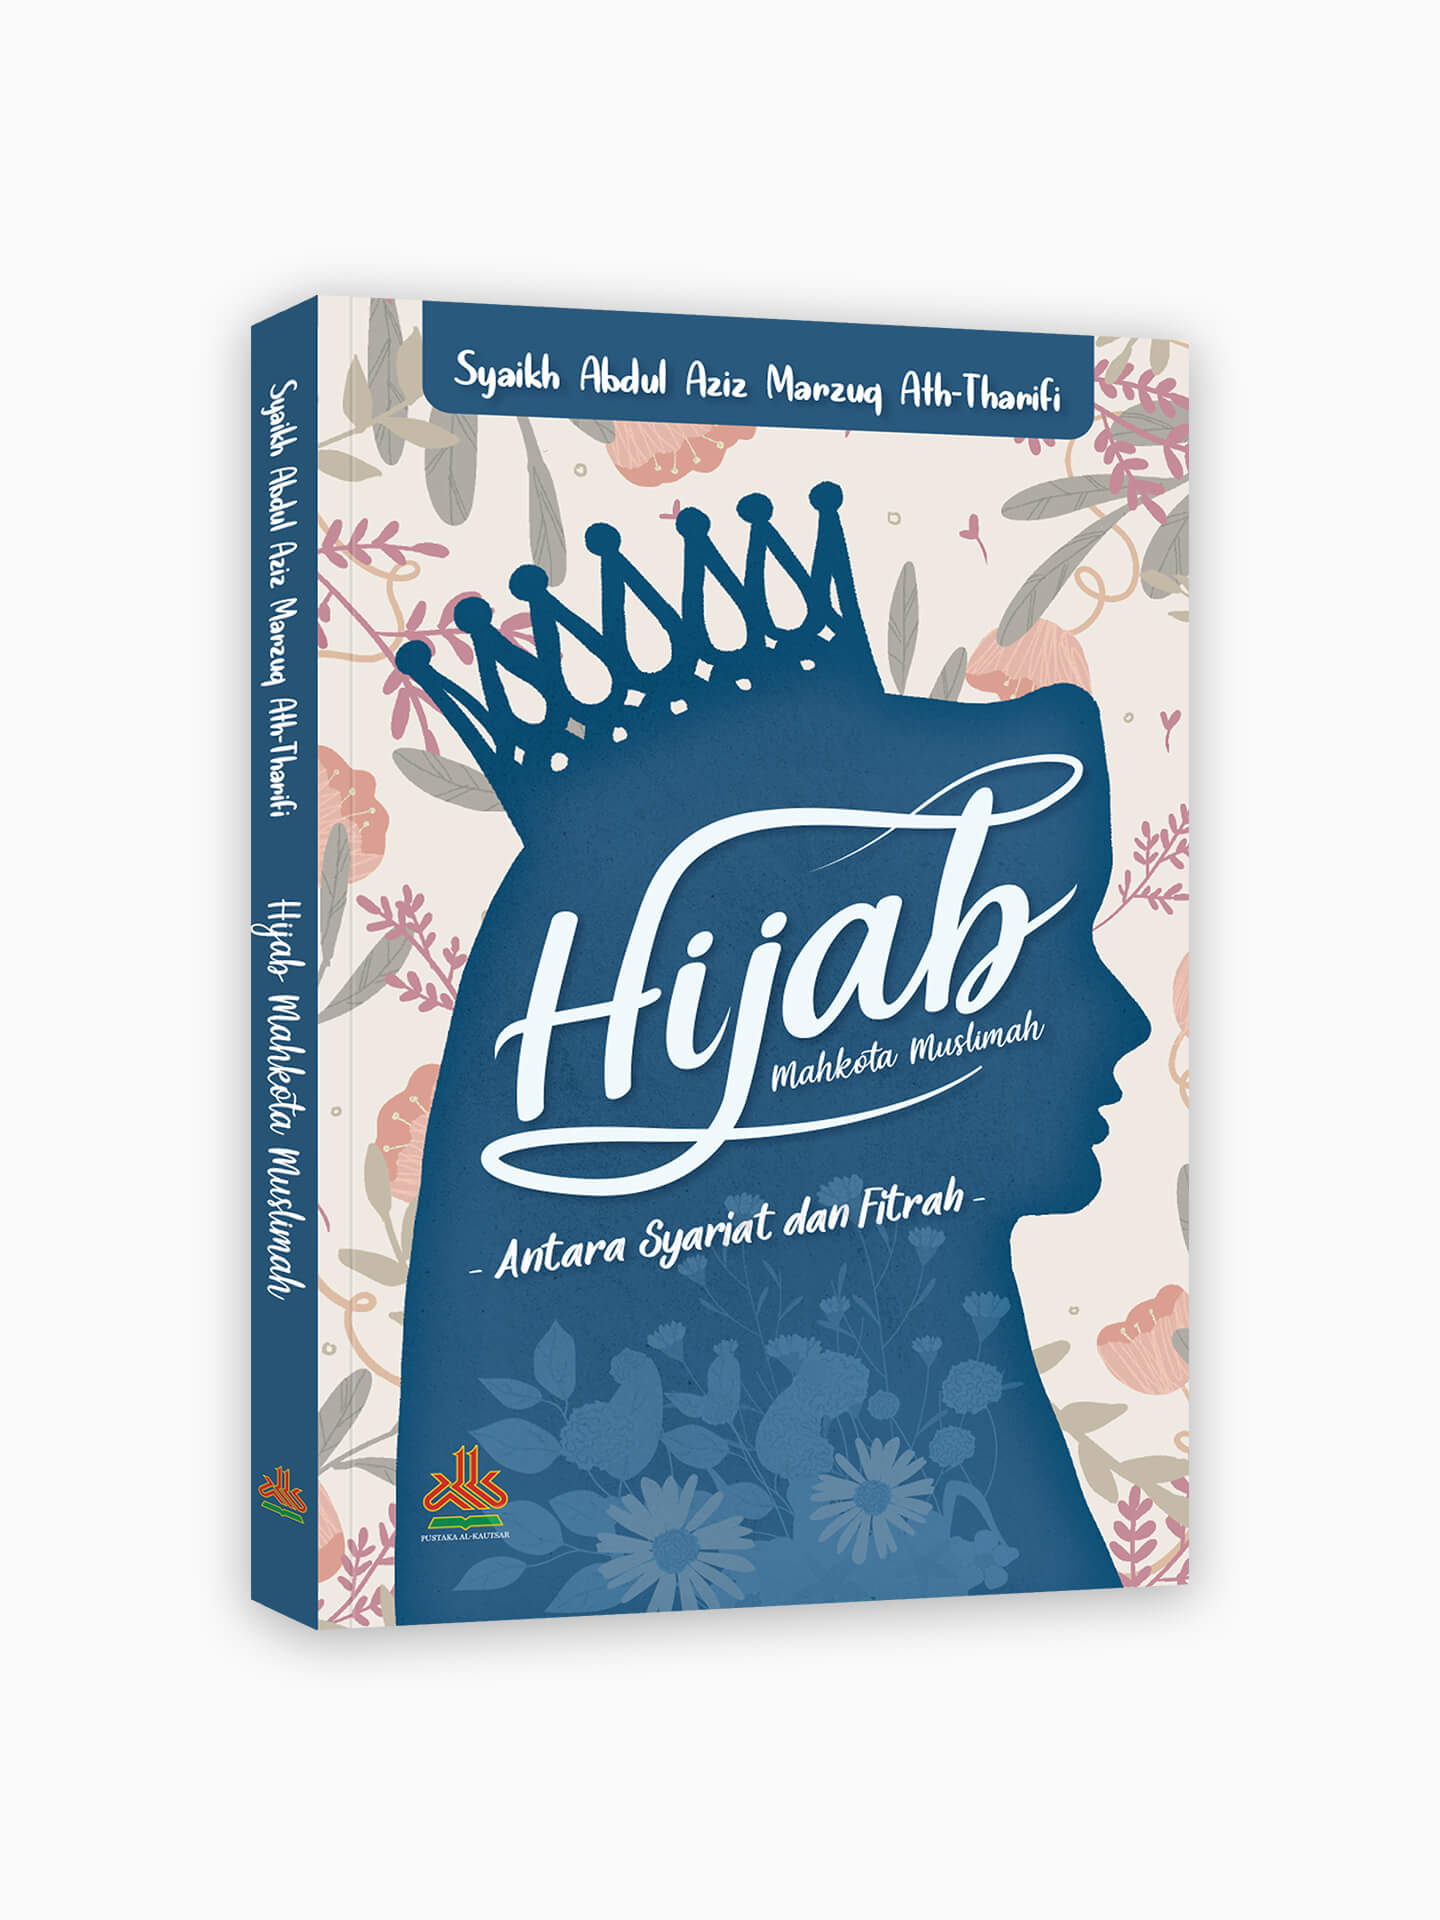 Hijab, Mahkota Muslimah